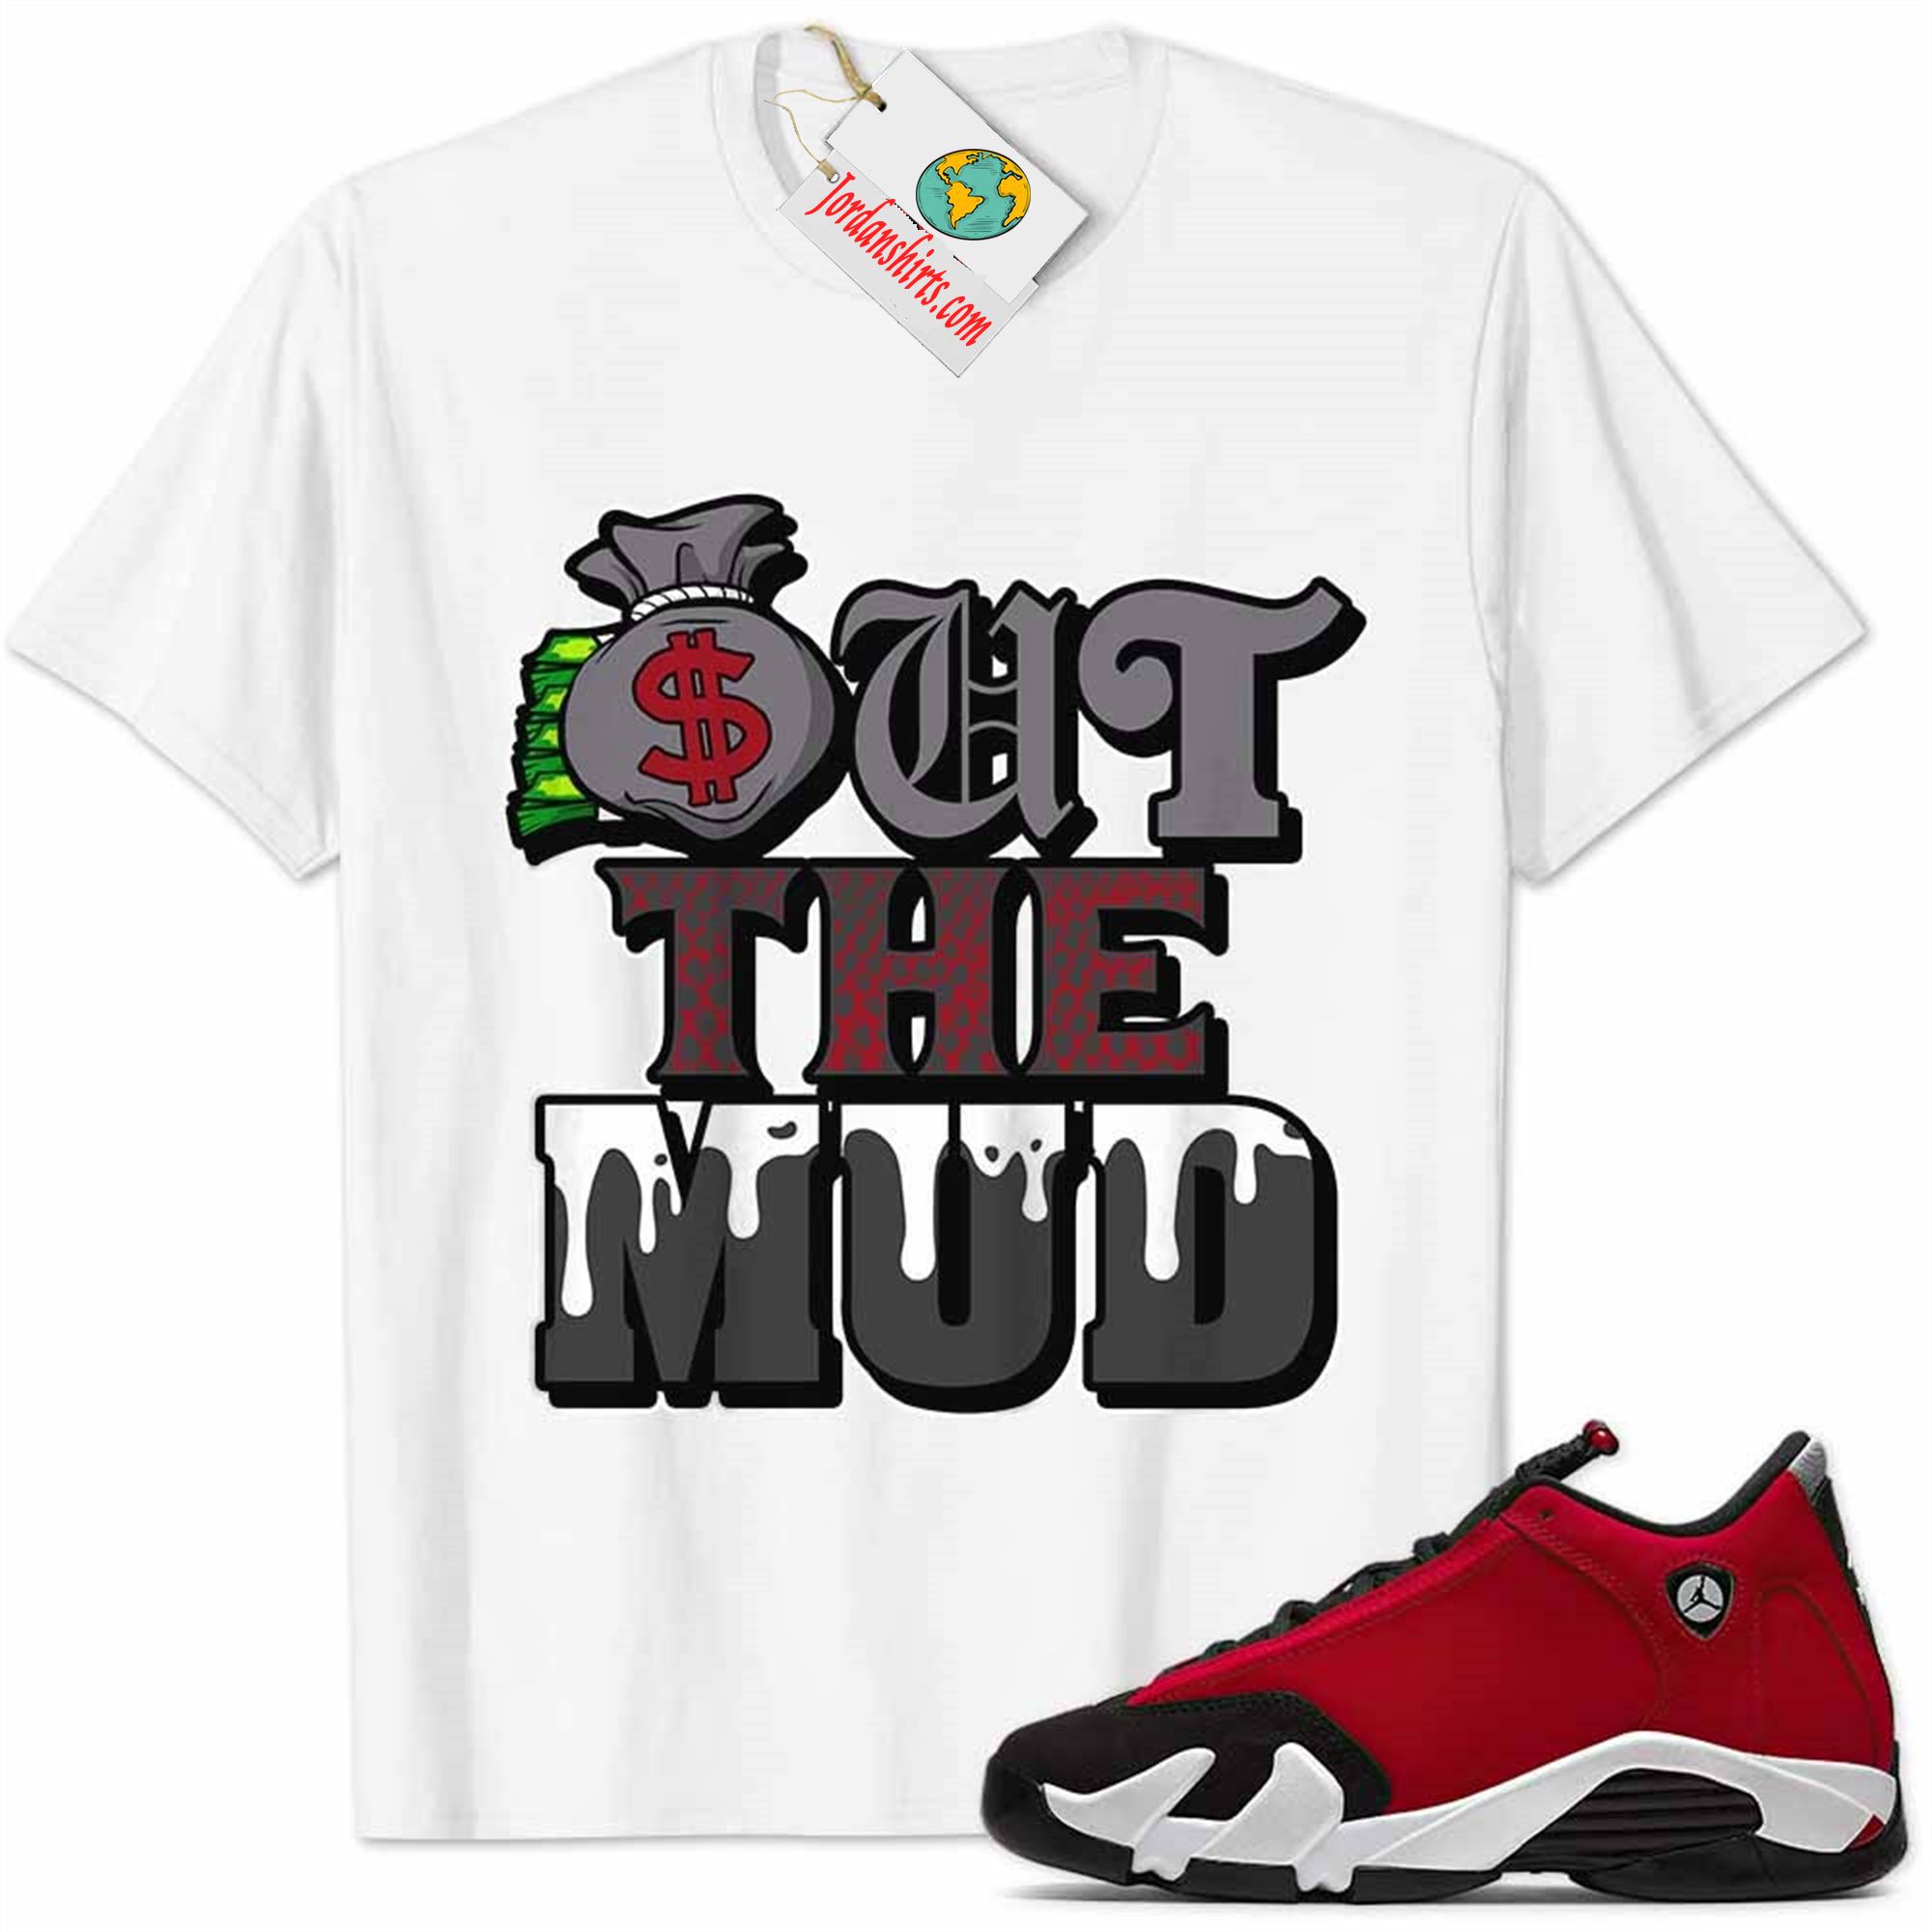 Jordan 14 Shirt, Jordan 14 Gym Red Shirt Out The Mud Money Bag White Full Size Up To 5xl